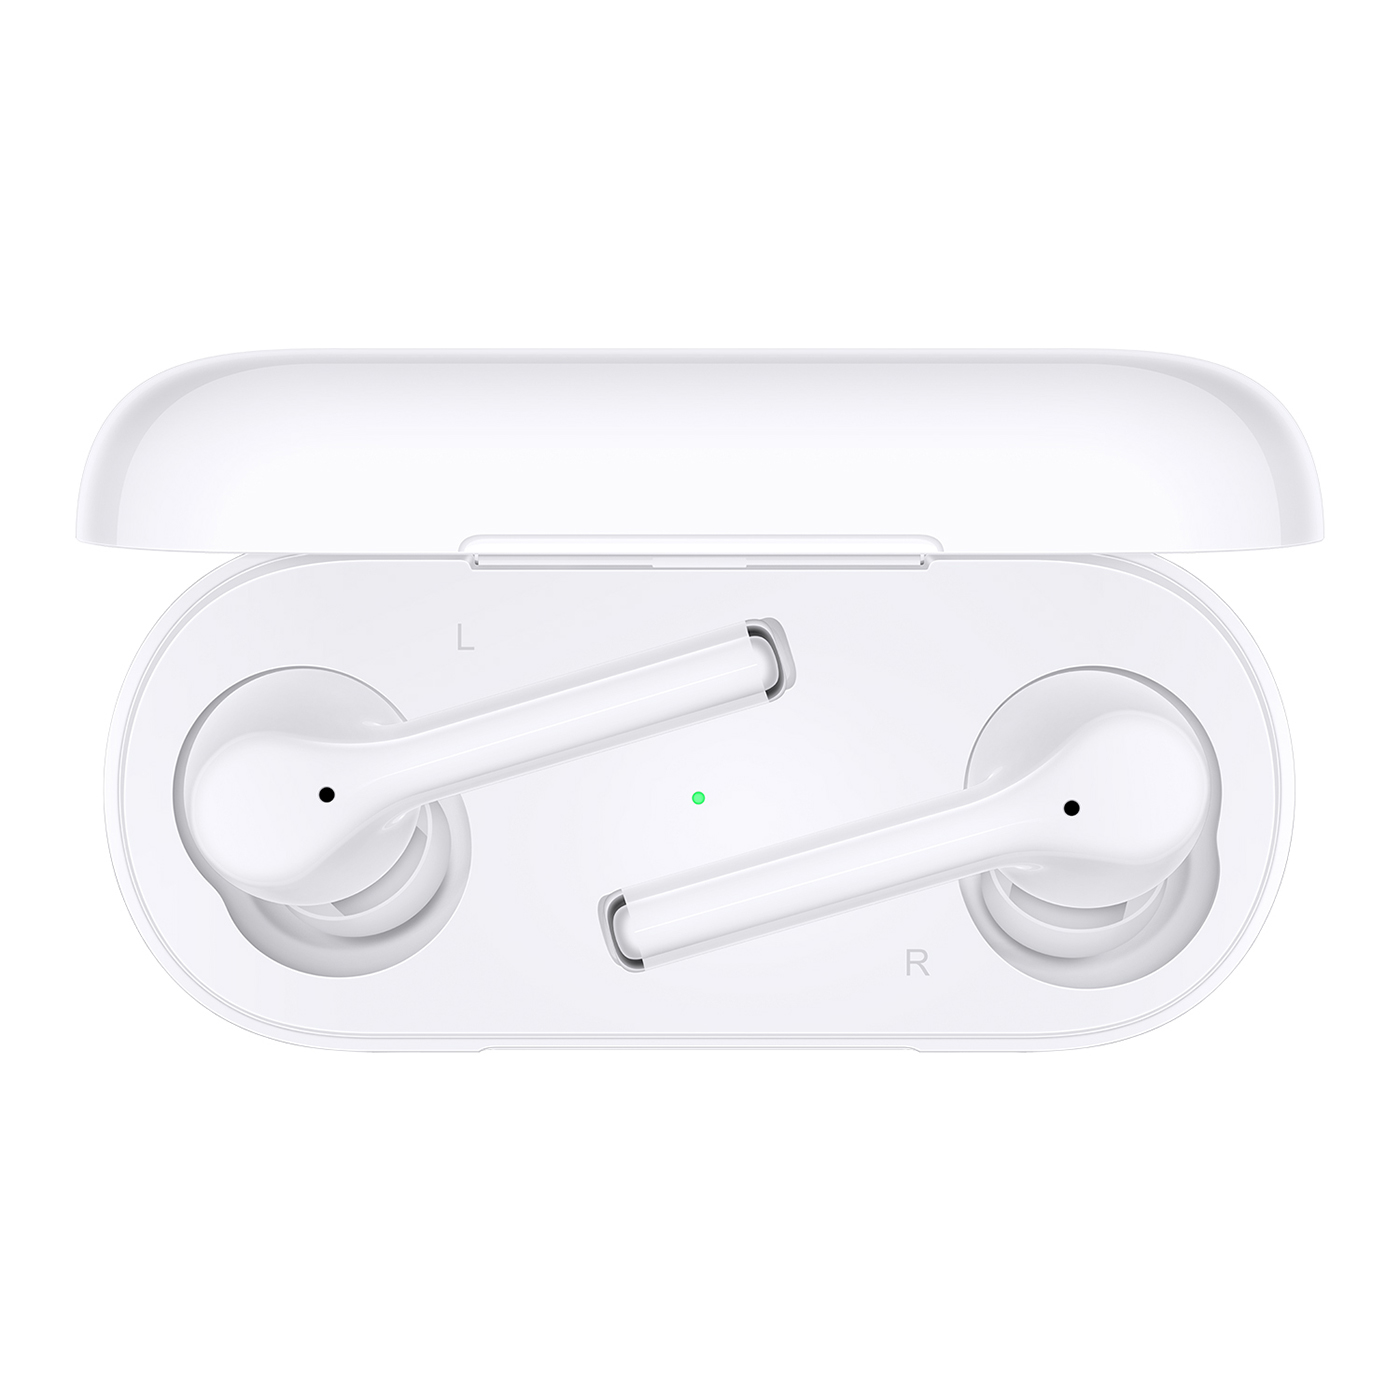 Audífonos HUAWEI Inalámbricos Bluetooth Freebuds 3i Blanco + Banda 4e Preventa